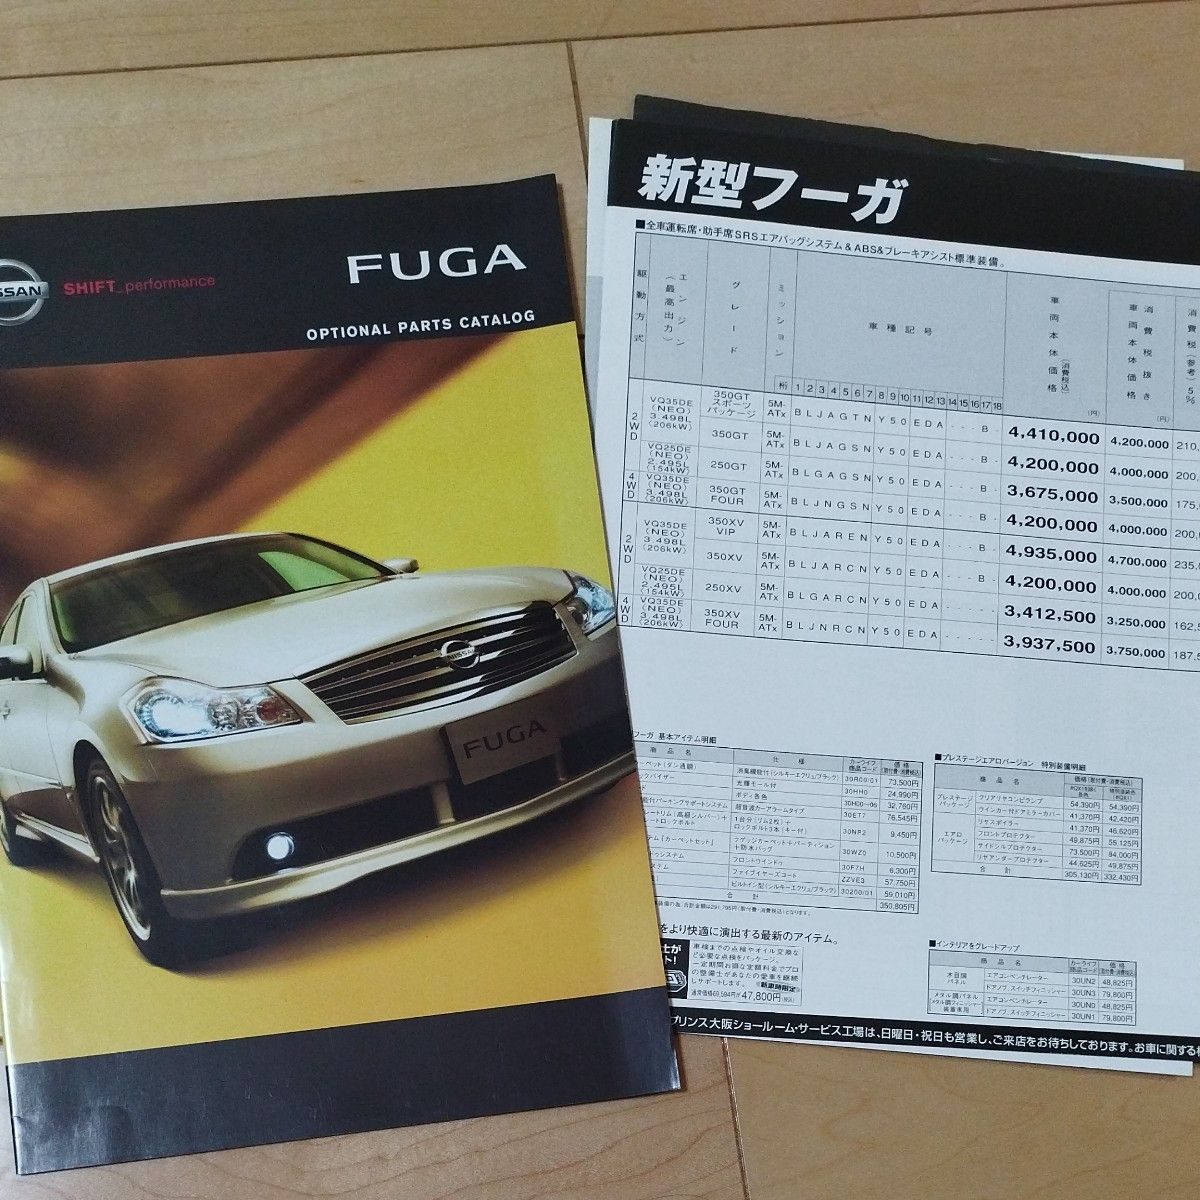 2004年10月 日産フーガ NISSAN FUGA 正規ディーラーカタログ 絶版車